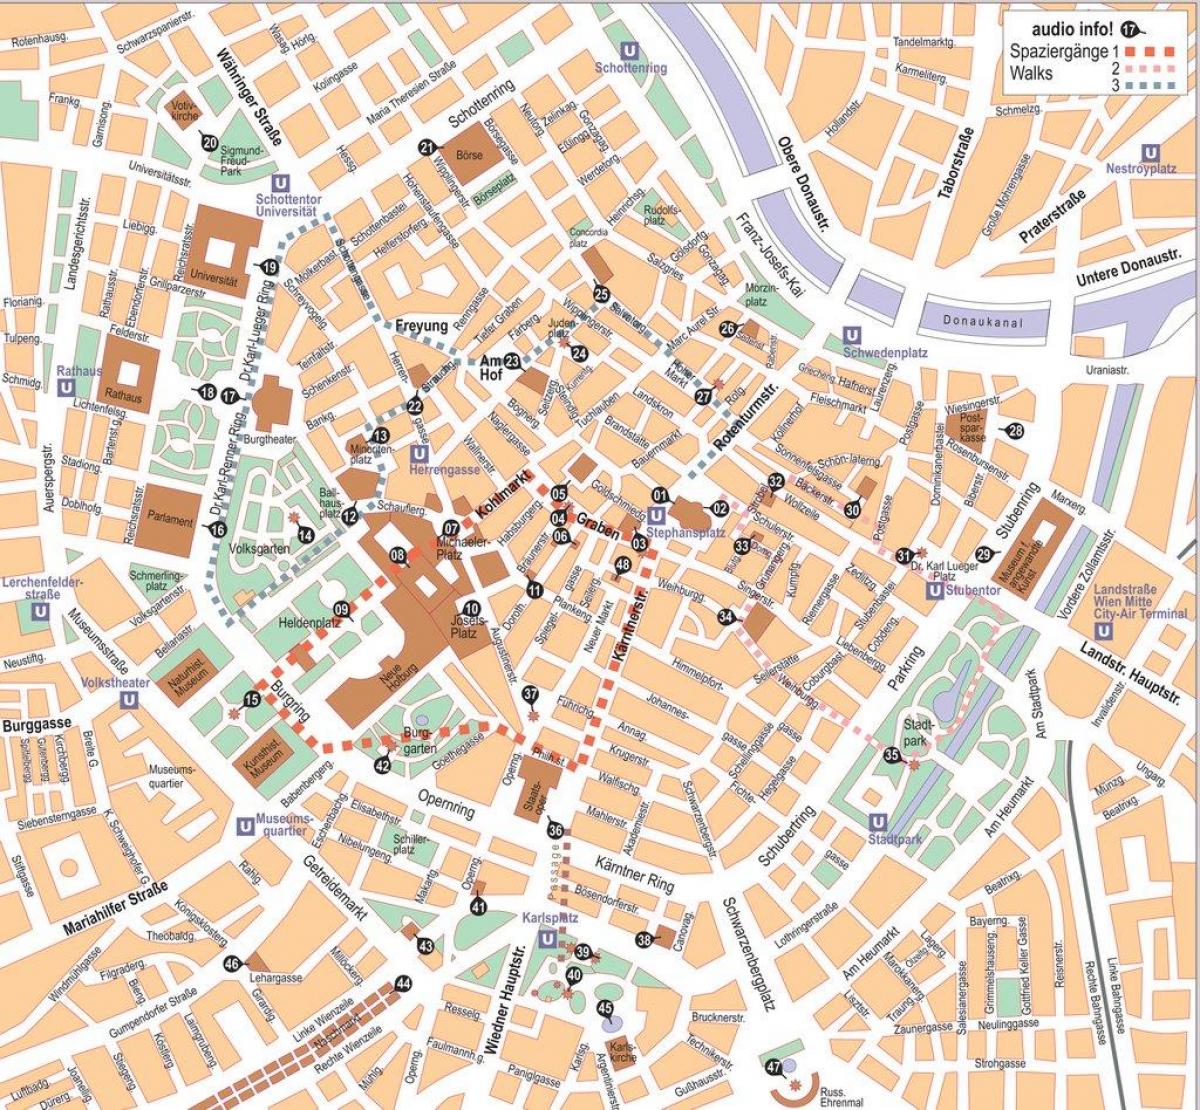 Mappa di Vienna della città offline